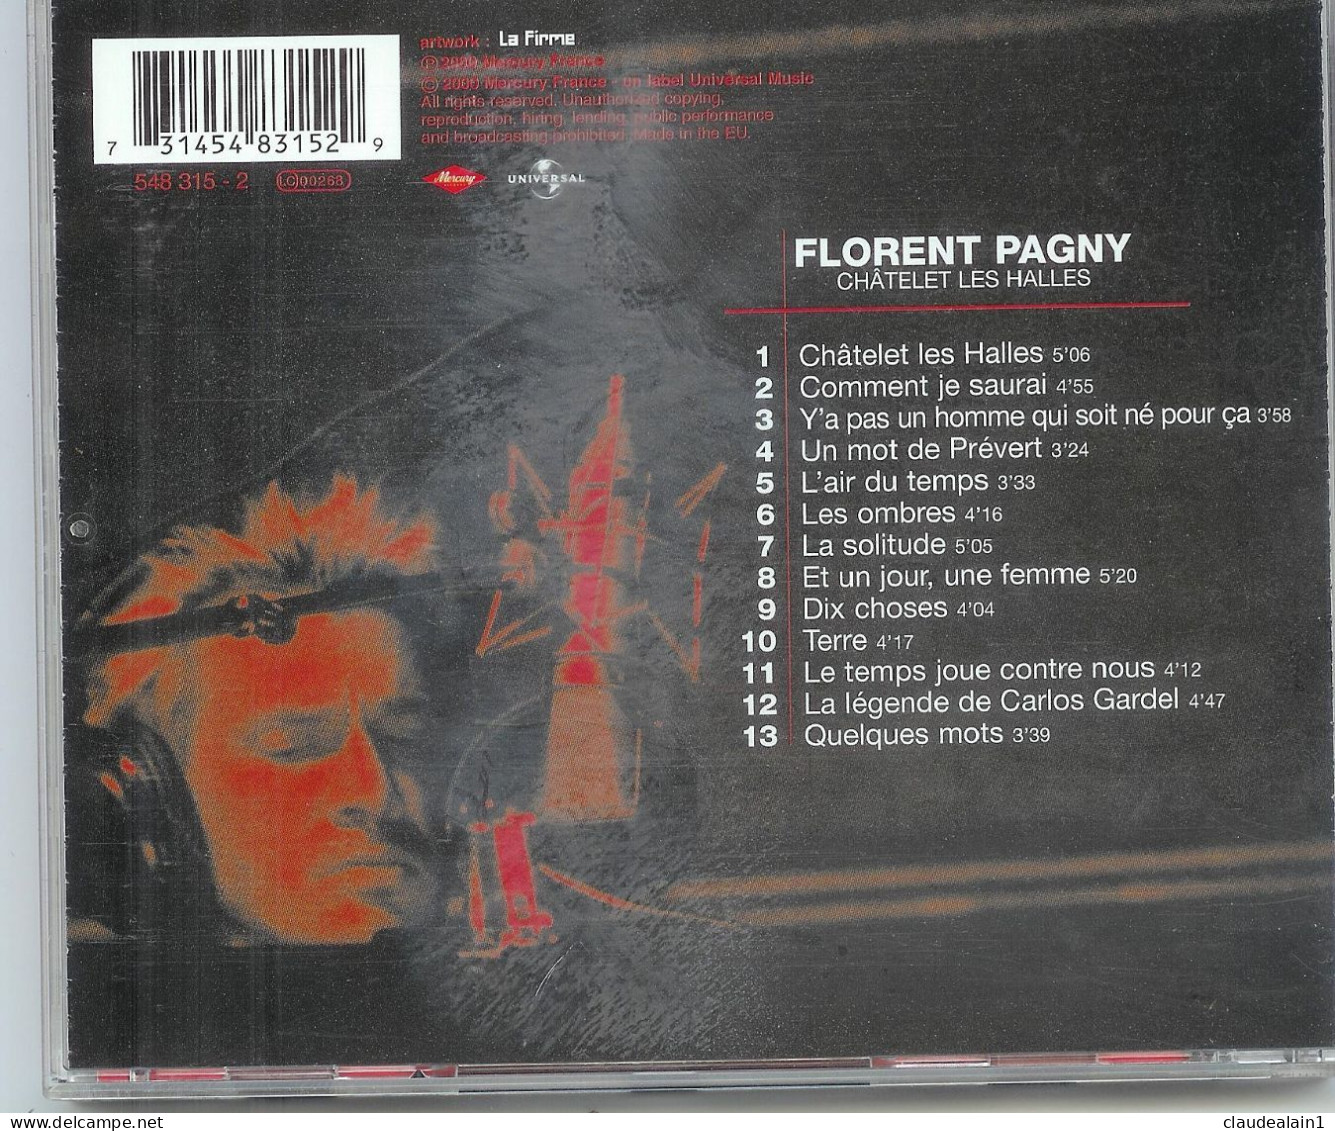 ALBUM CD FLORENT PAGNY - CHATELET LES HALLES (13 Titres) - Très Bon état - Other - French Music